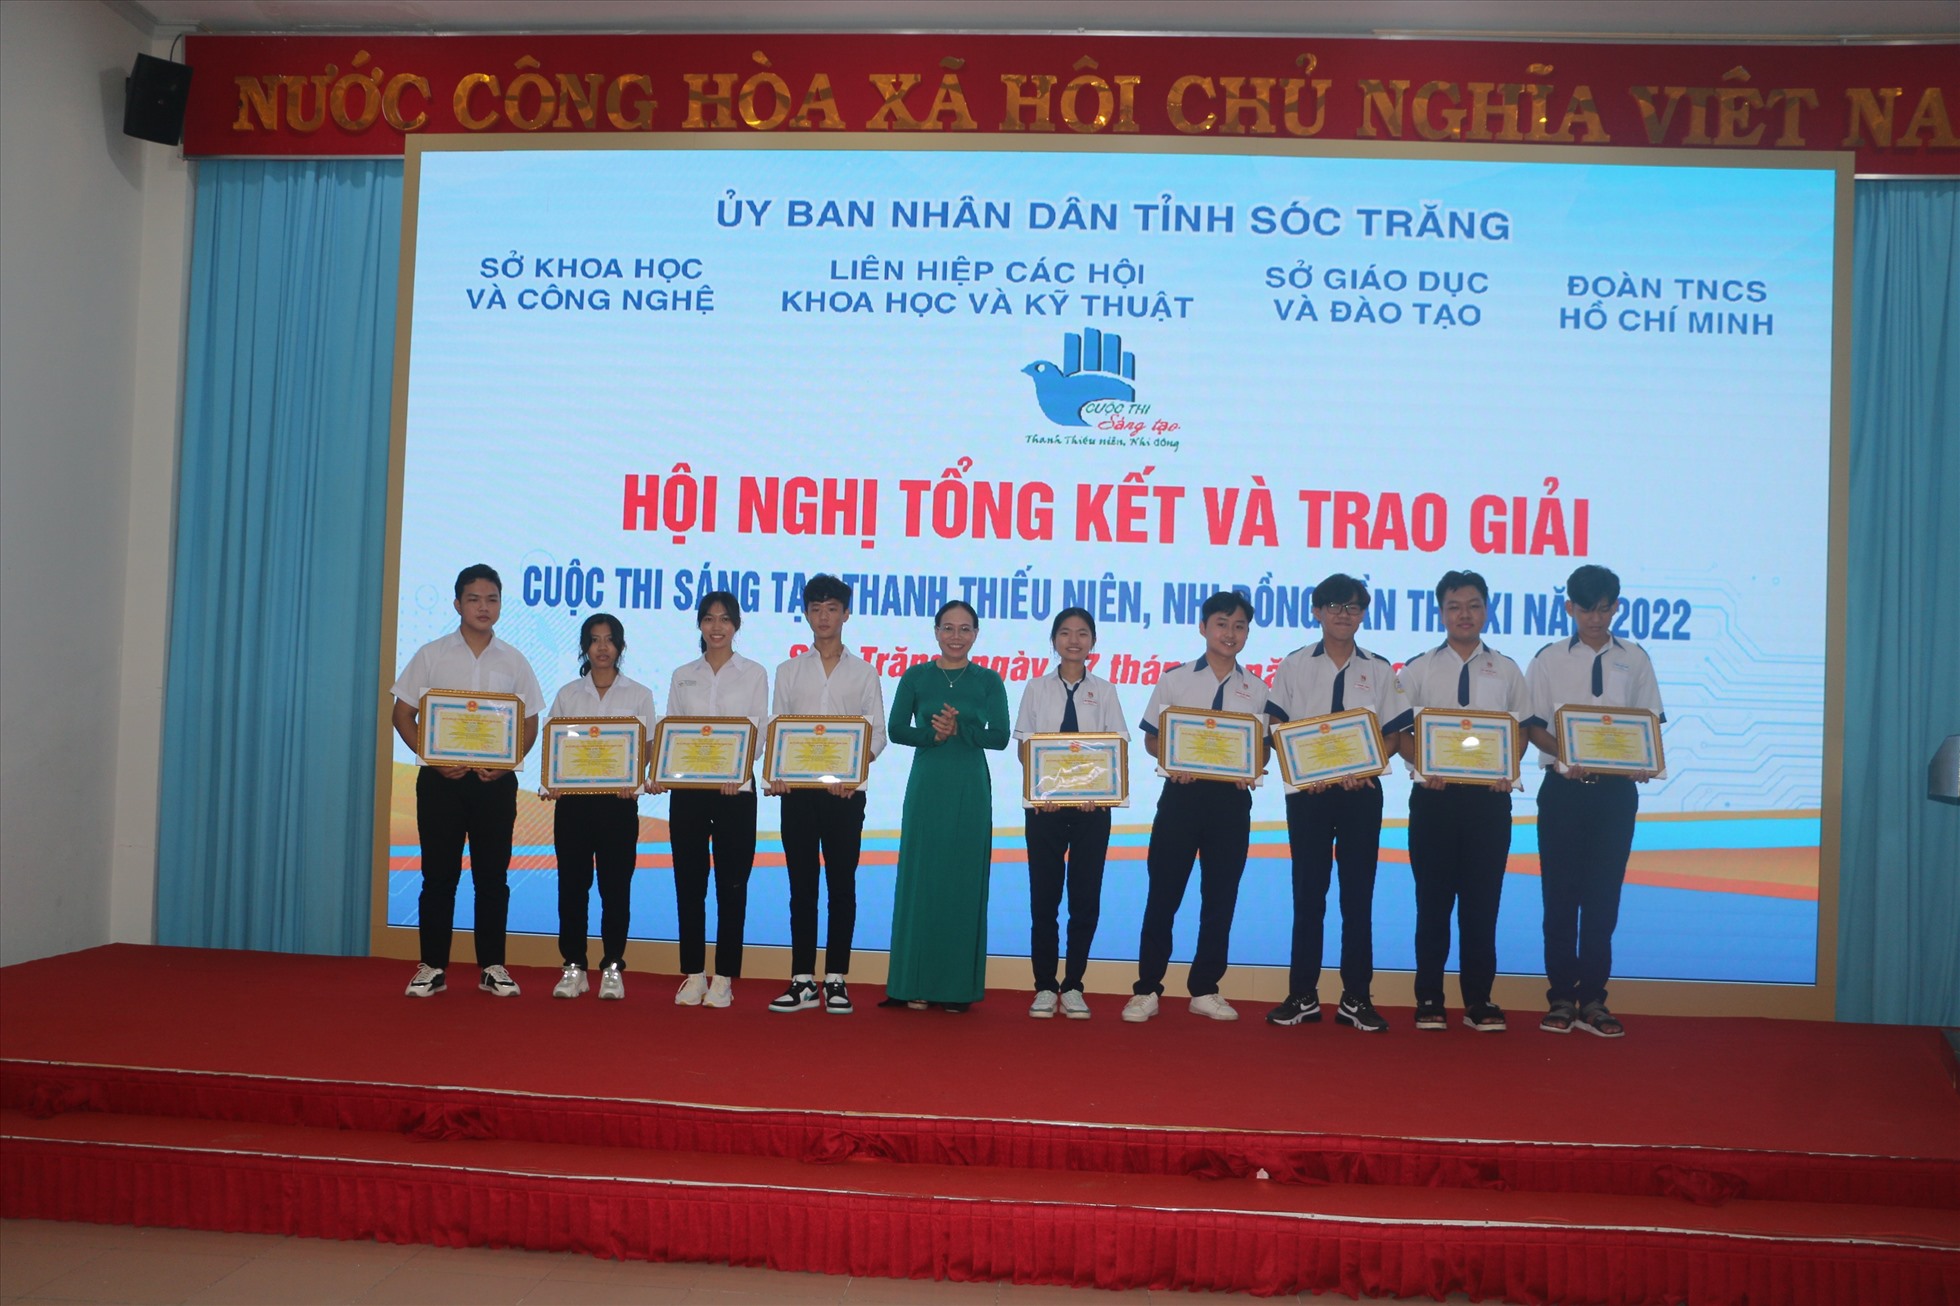 Phó Chủ tịch UBND tỉnh Sóc Trăng Huỳnh Thị Diễm Ngọc trao giải cho thanh thiếu niên đạt giải của cuộc thi